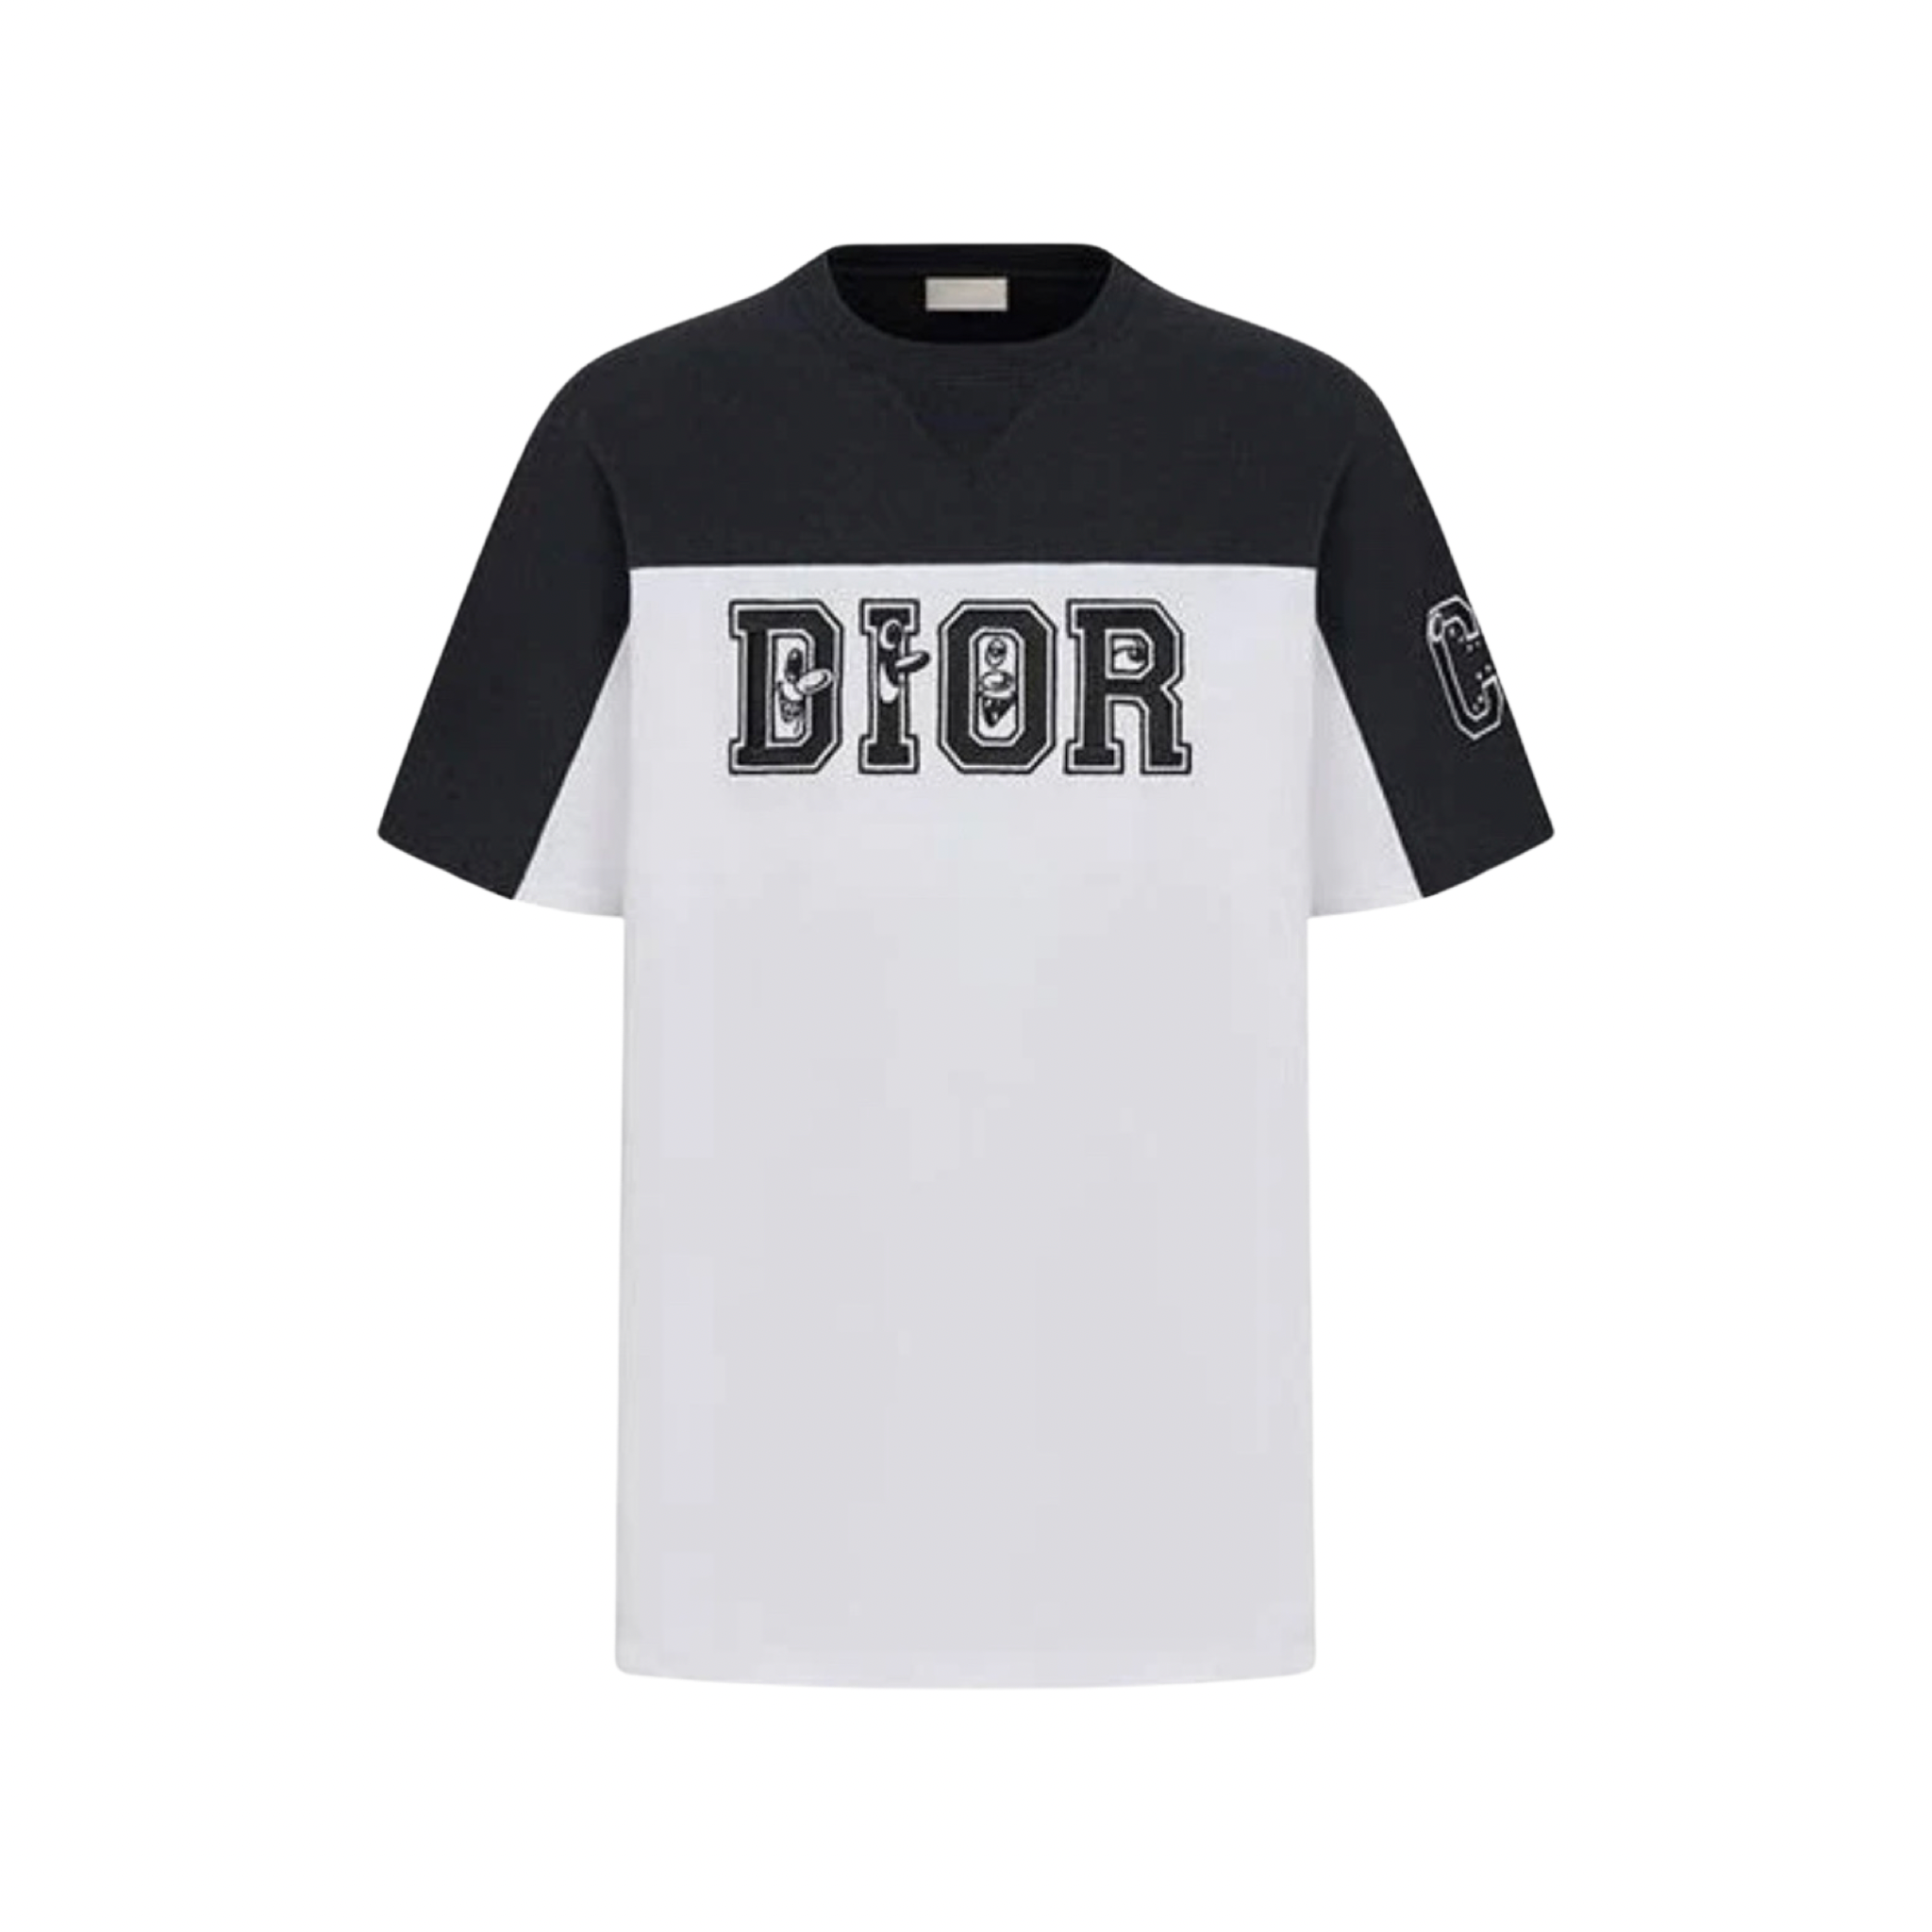 Dior Printed Men Premium Shirts